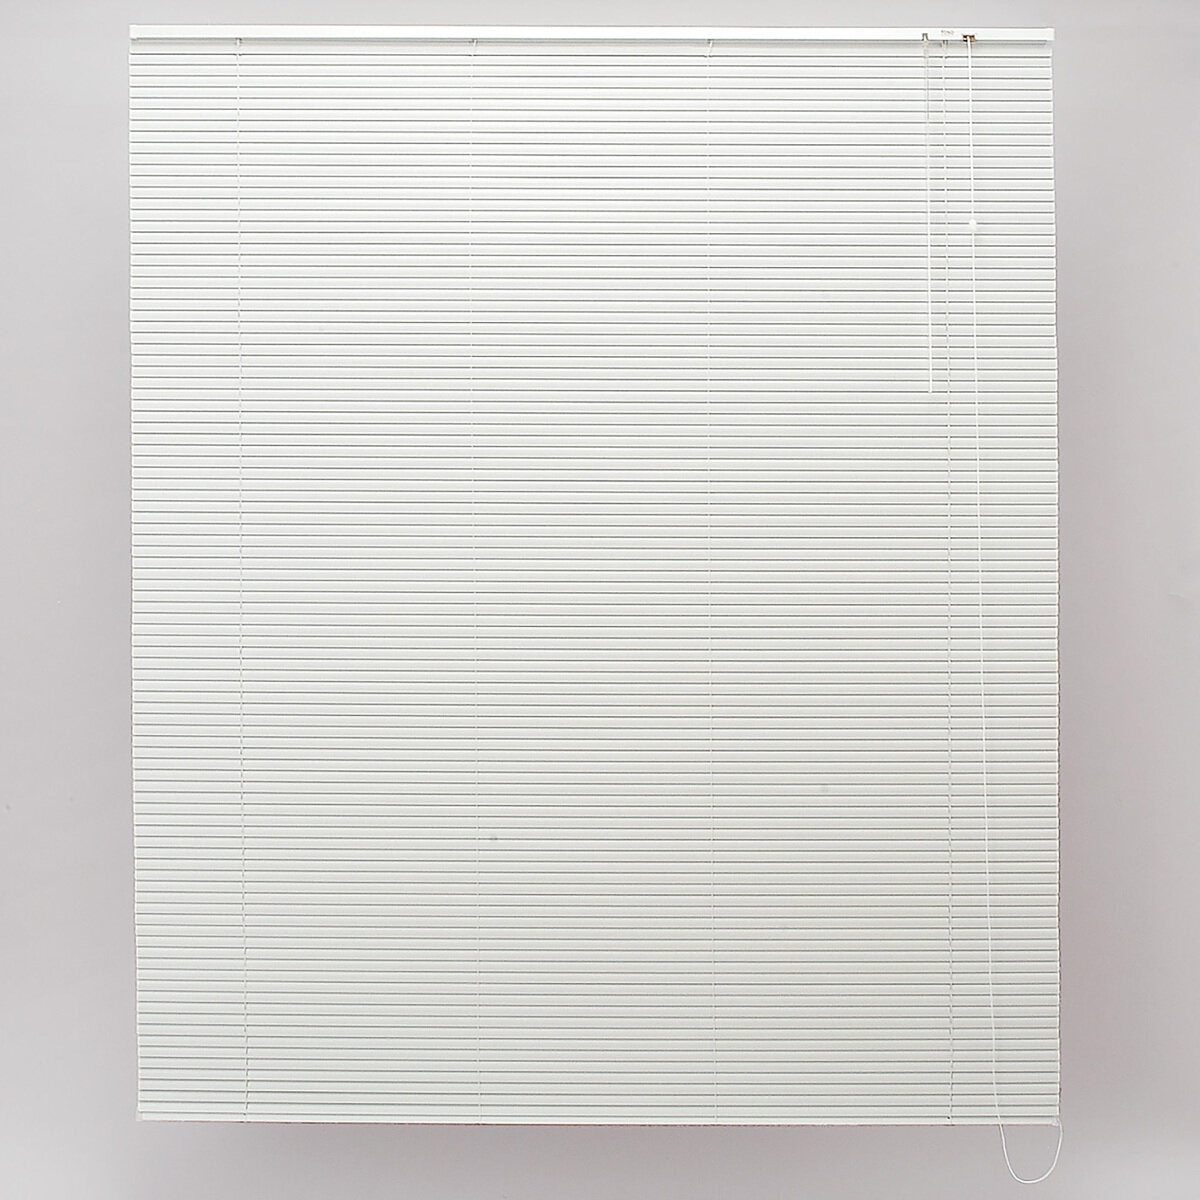 トーソー スポーラR IB アルミブラインド 108 cm x 183 cm ホワイト